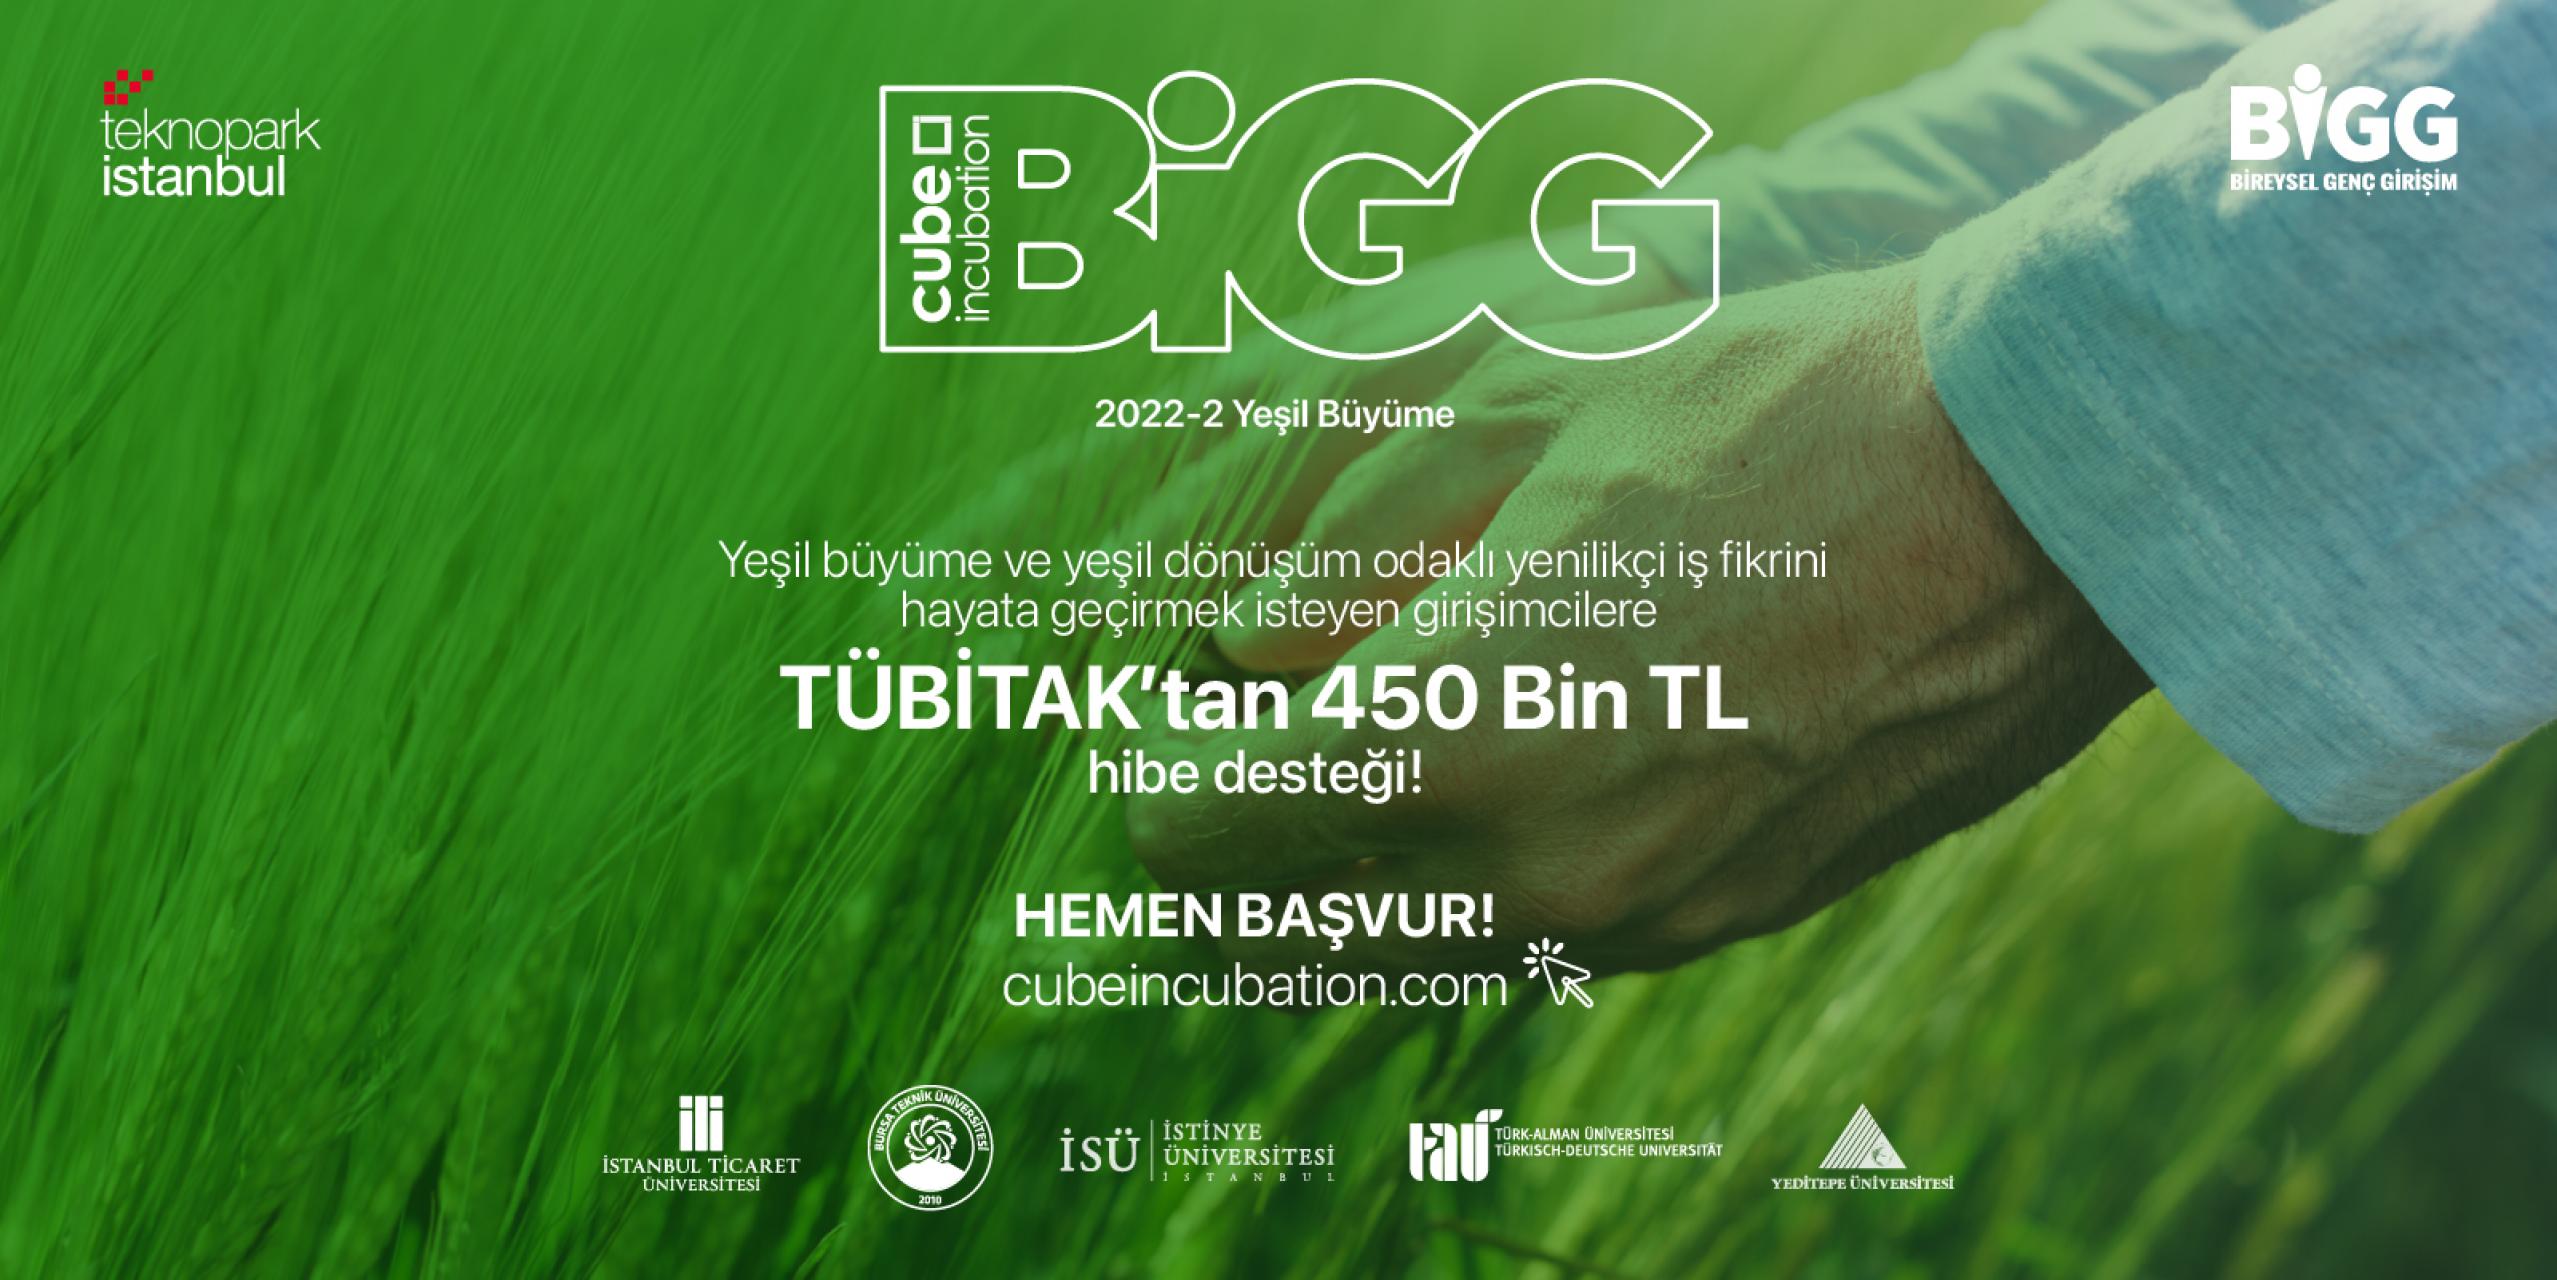 BİGG Cube Incubation Yeşil Büyüme Programı 2022-2 Çağrı Dönemi Açıldı!